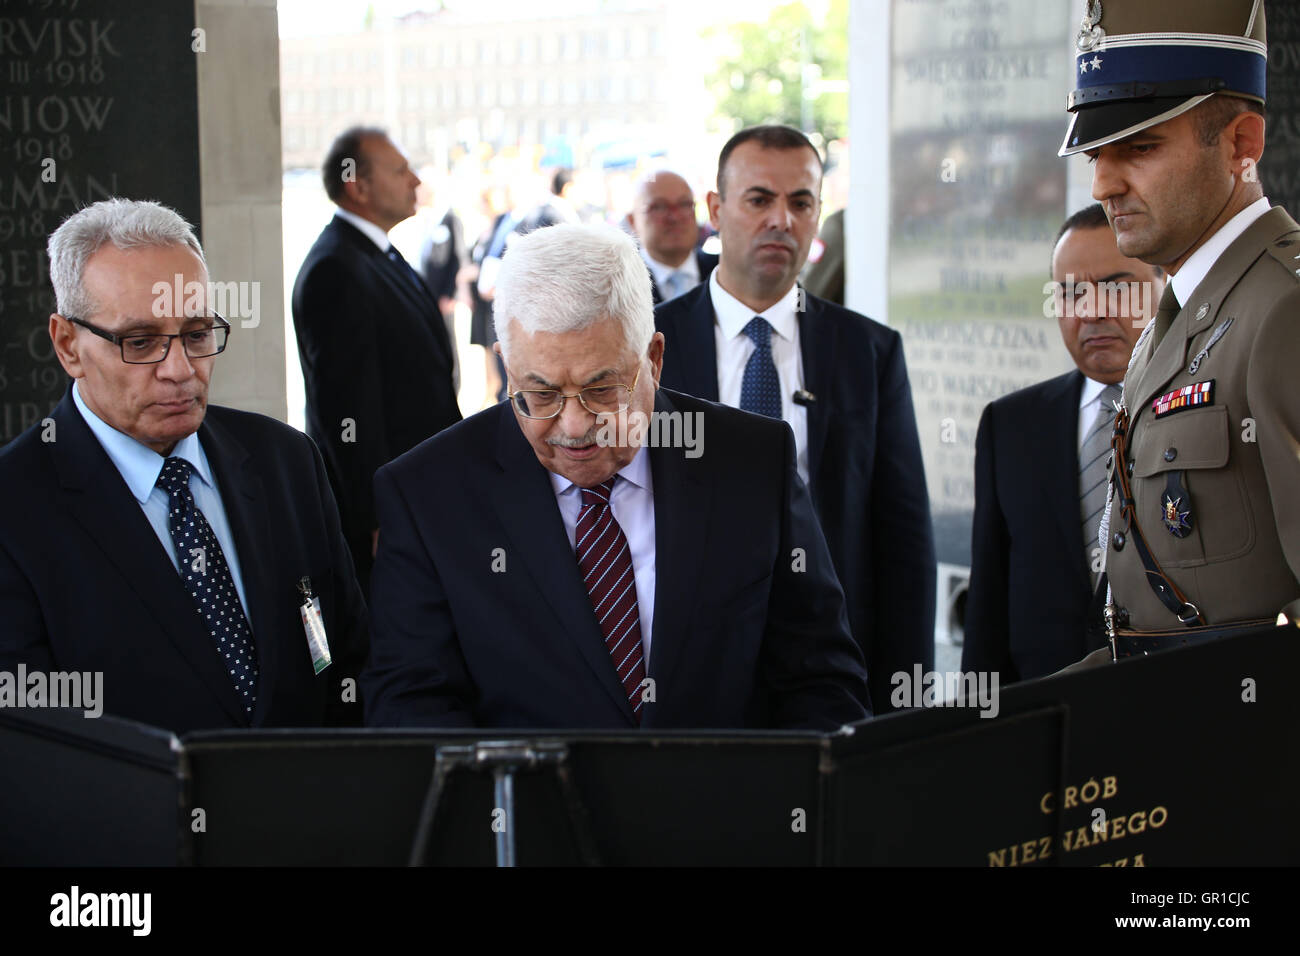 Pologne, Varsovie, 6 septembre 2016 : Le président palestinien Mahmoud Abbas lors d'une cérémonie de dépôt de gerbes au Monument du Soldat inconnu. Credit : Jake Ratz/Alamy Live News Banque D'Images